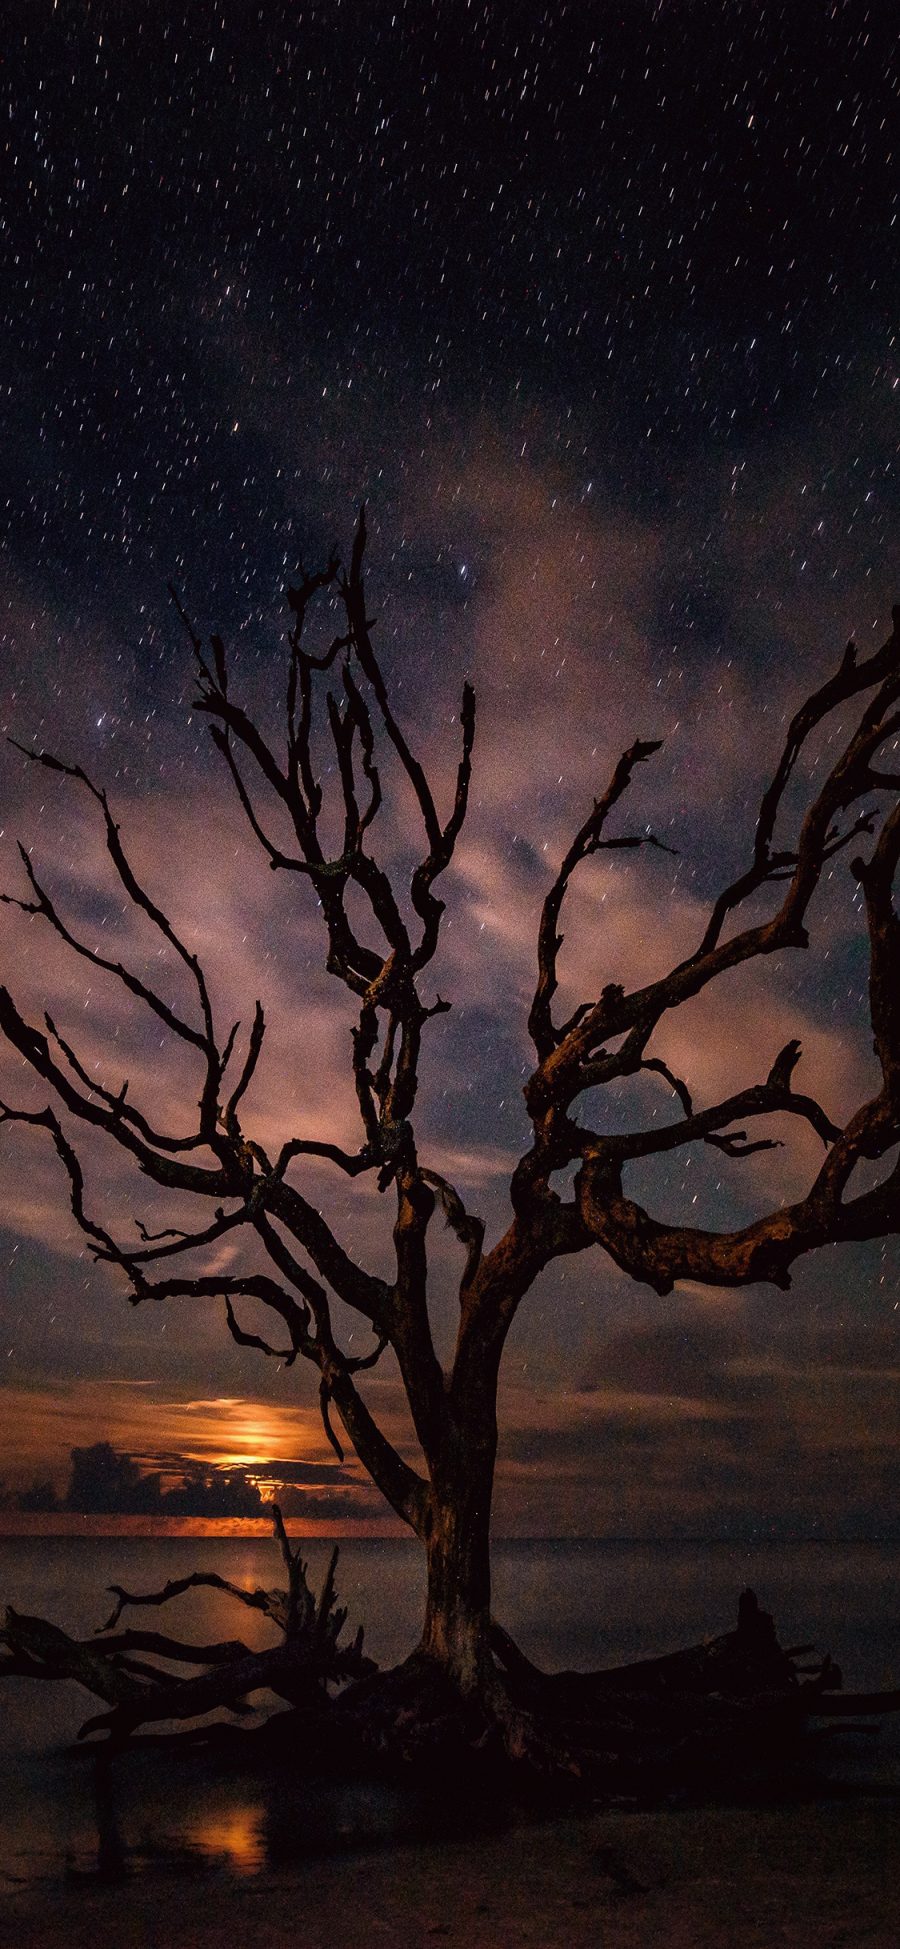 [2436×1125]夜景 星空 树枝 枯木 意境 苹果手机壁纸图片